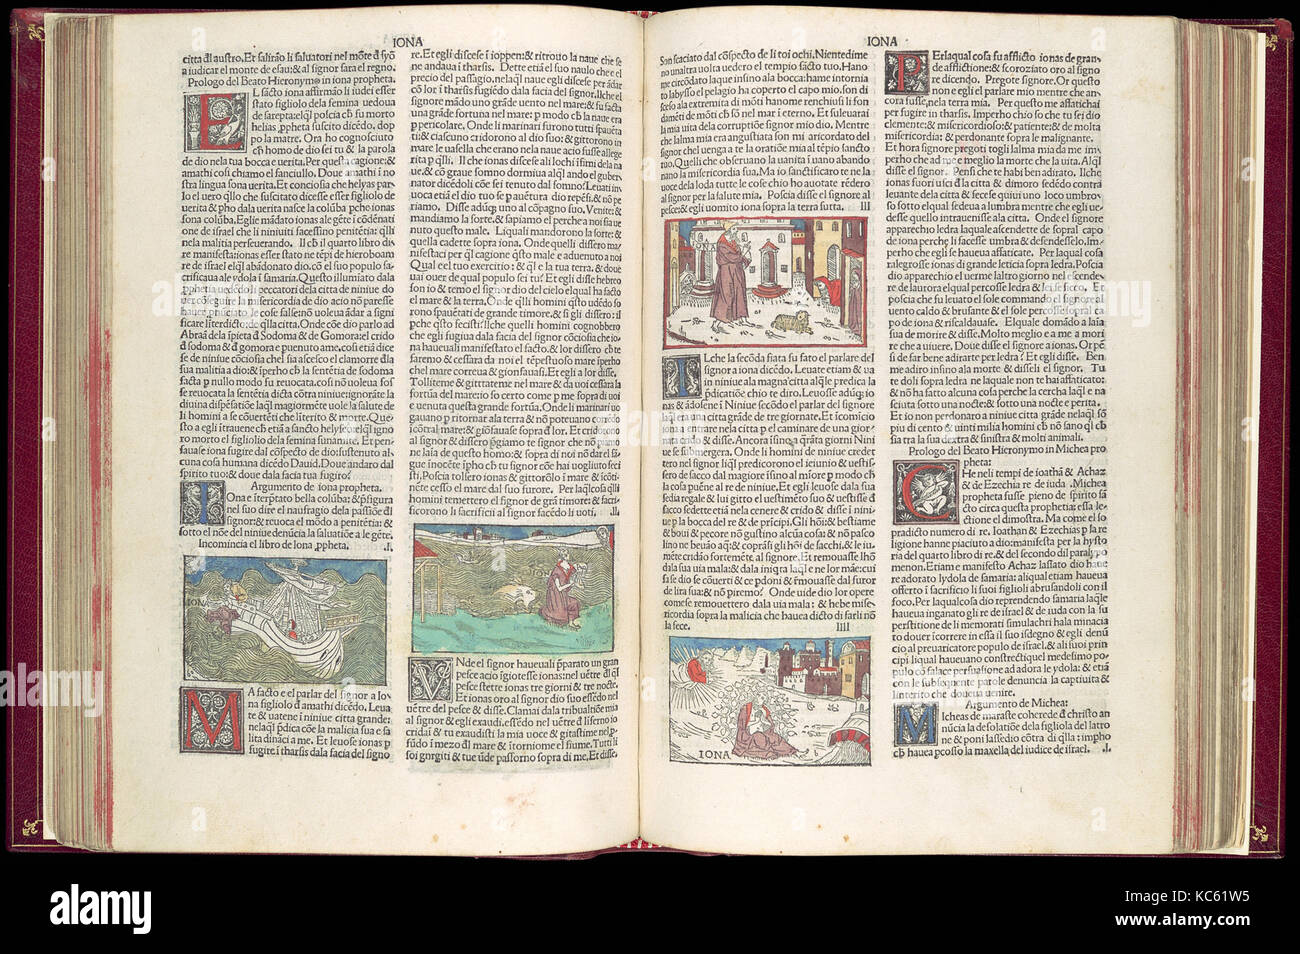 La Bibbia Malermi, vol. II, 15 ottobre 1490, libro stampato con la xilografia di illustrazioni colorate a mano, 11 15/16 x 8 7/8 x 1 3/8 Foto Stock